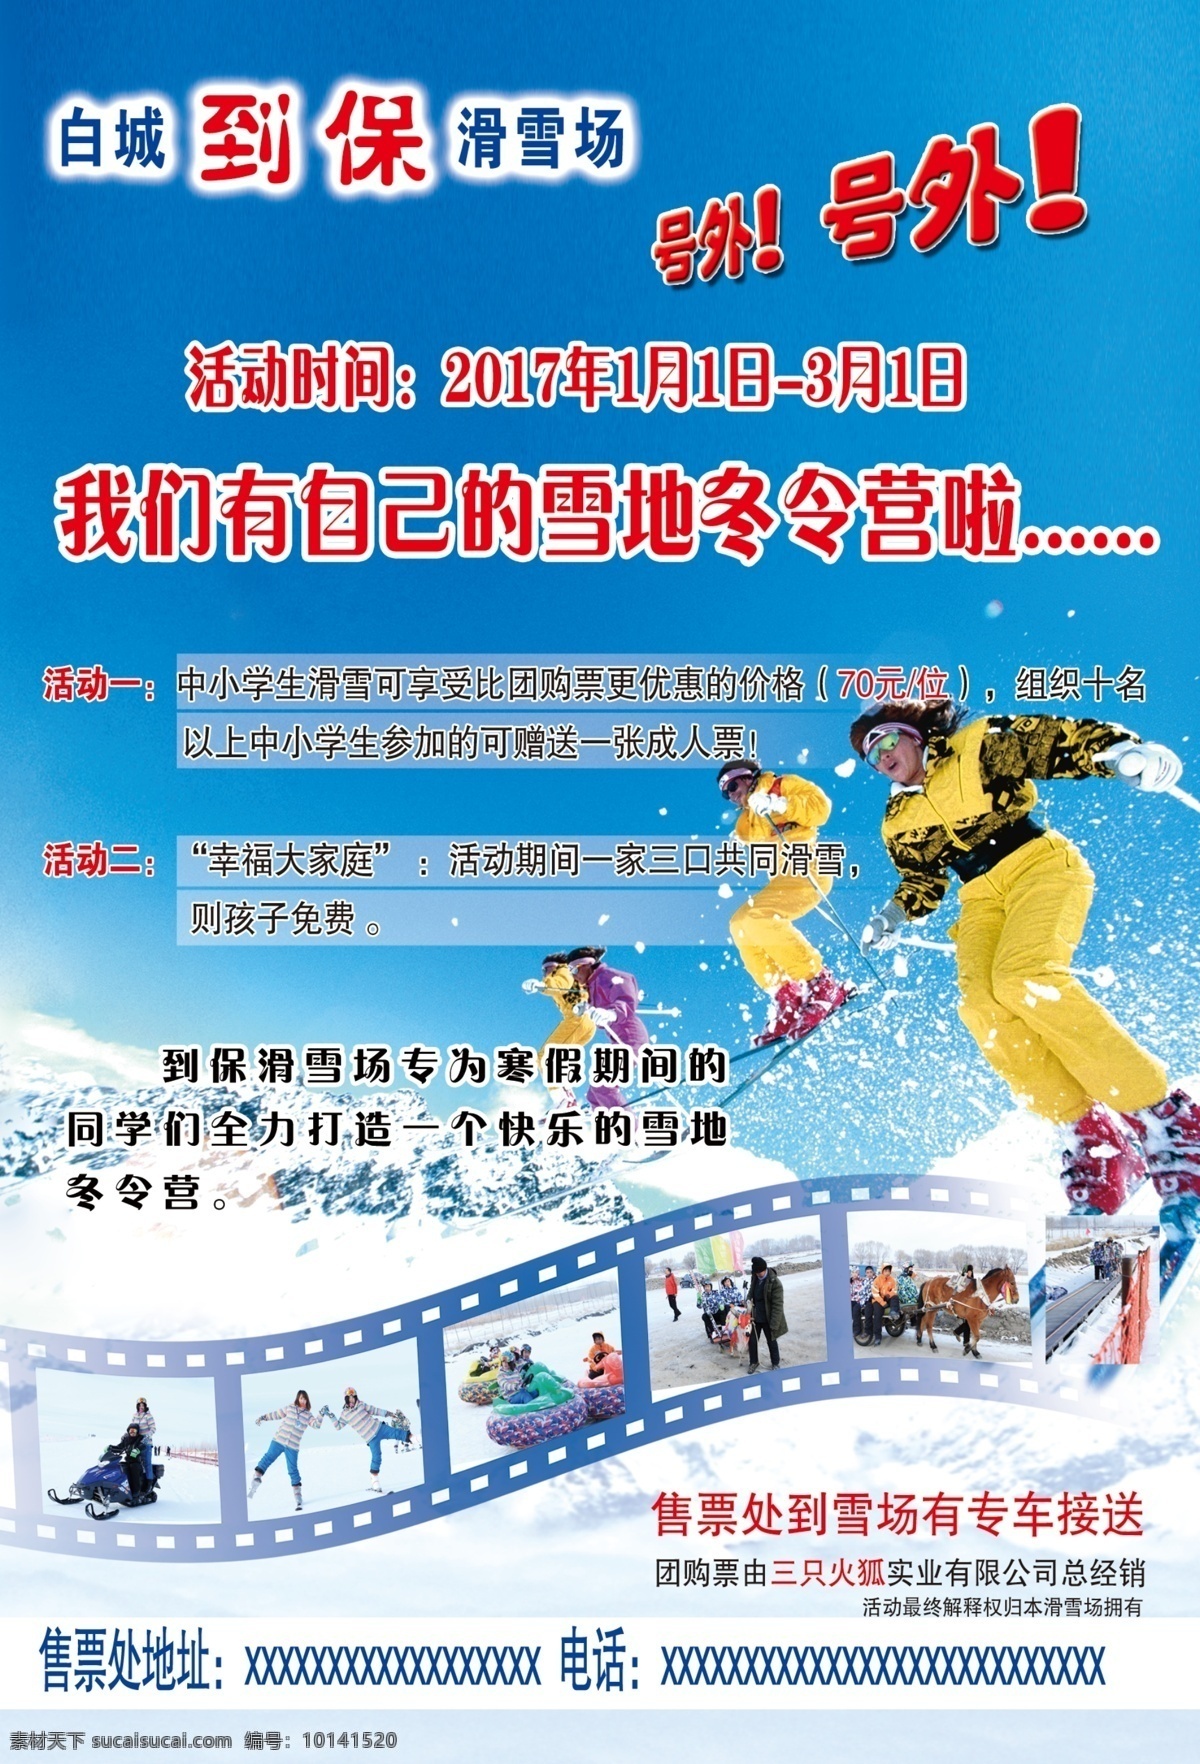 滑雪宣传单 滑雪场 宣传单 彩页 滑雪 照片